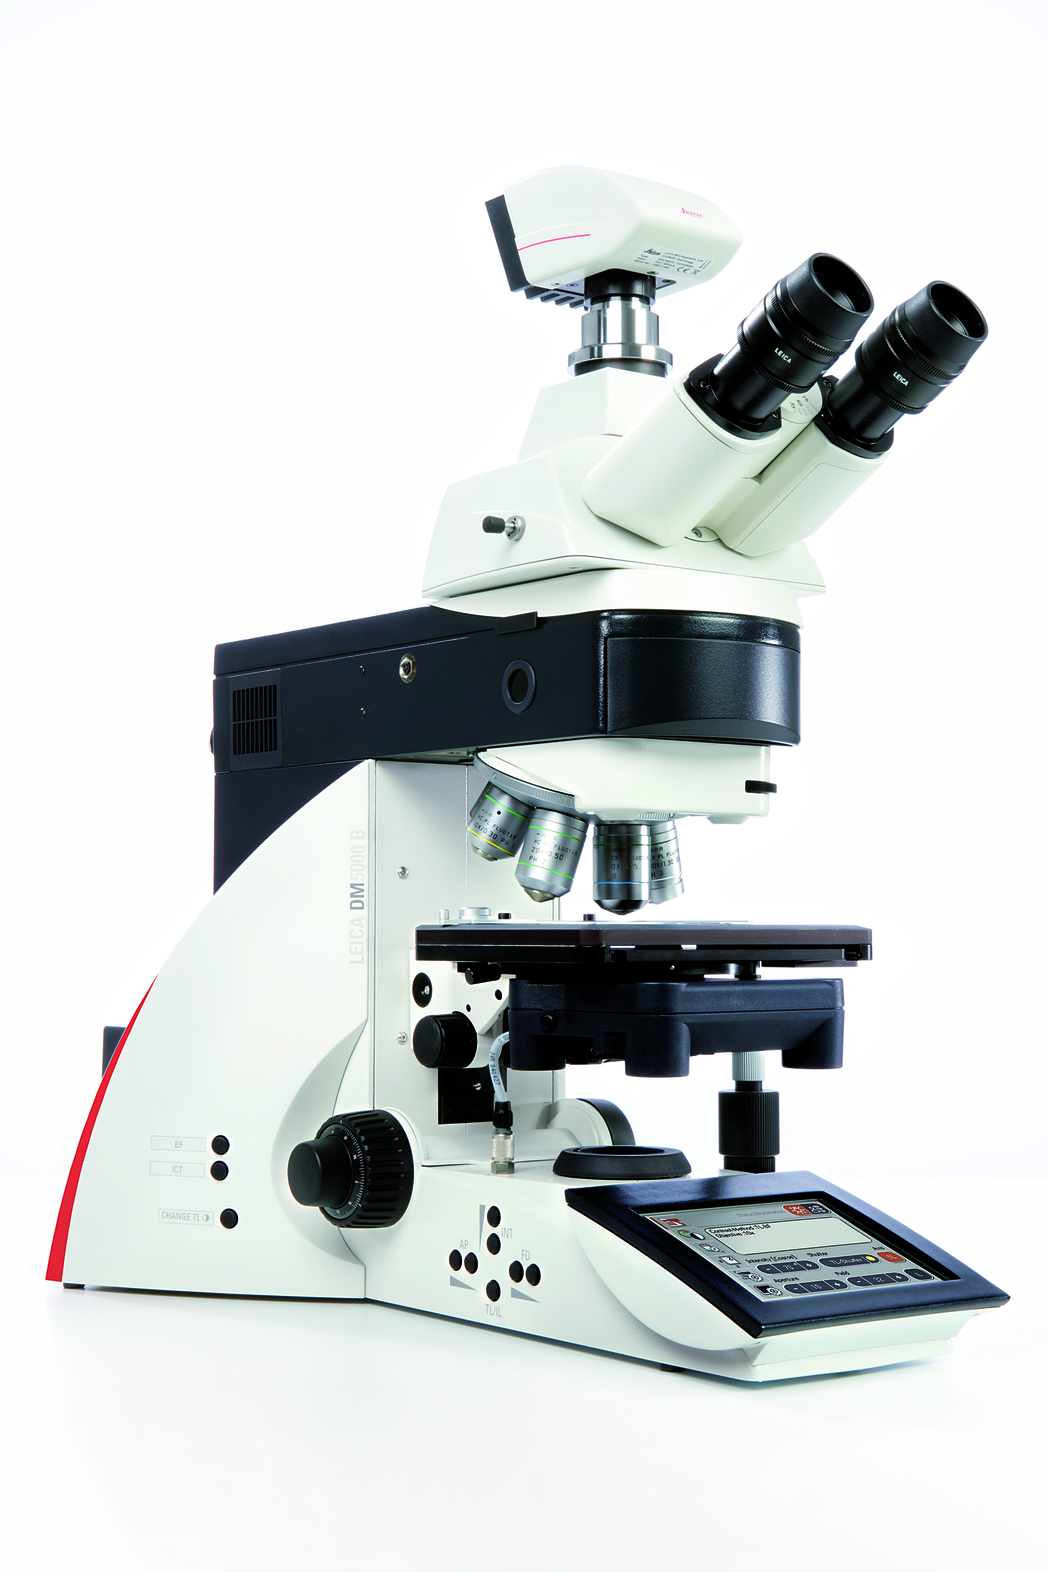 O Leica DM5000 B intuitivo e automatizado, ideal para estudos morfológicos e pesquisa de células vivas, é fácil de usar